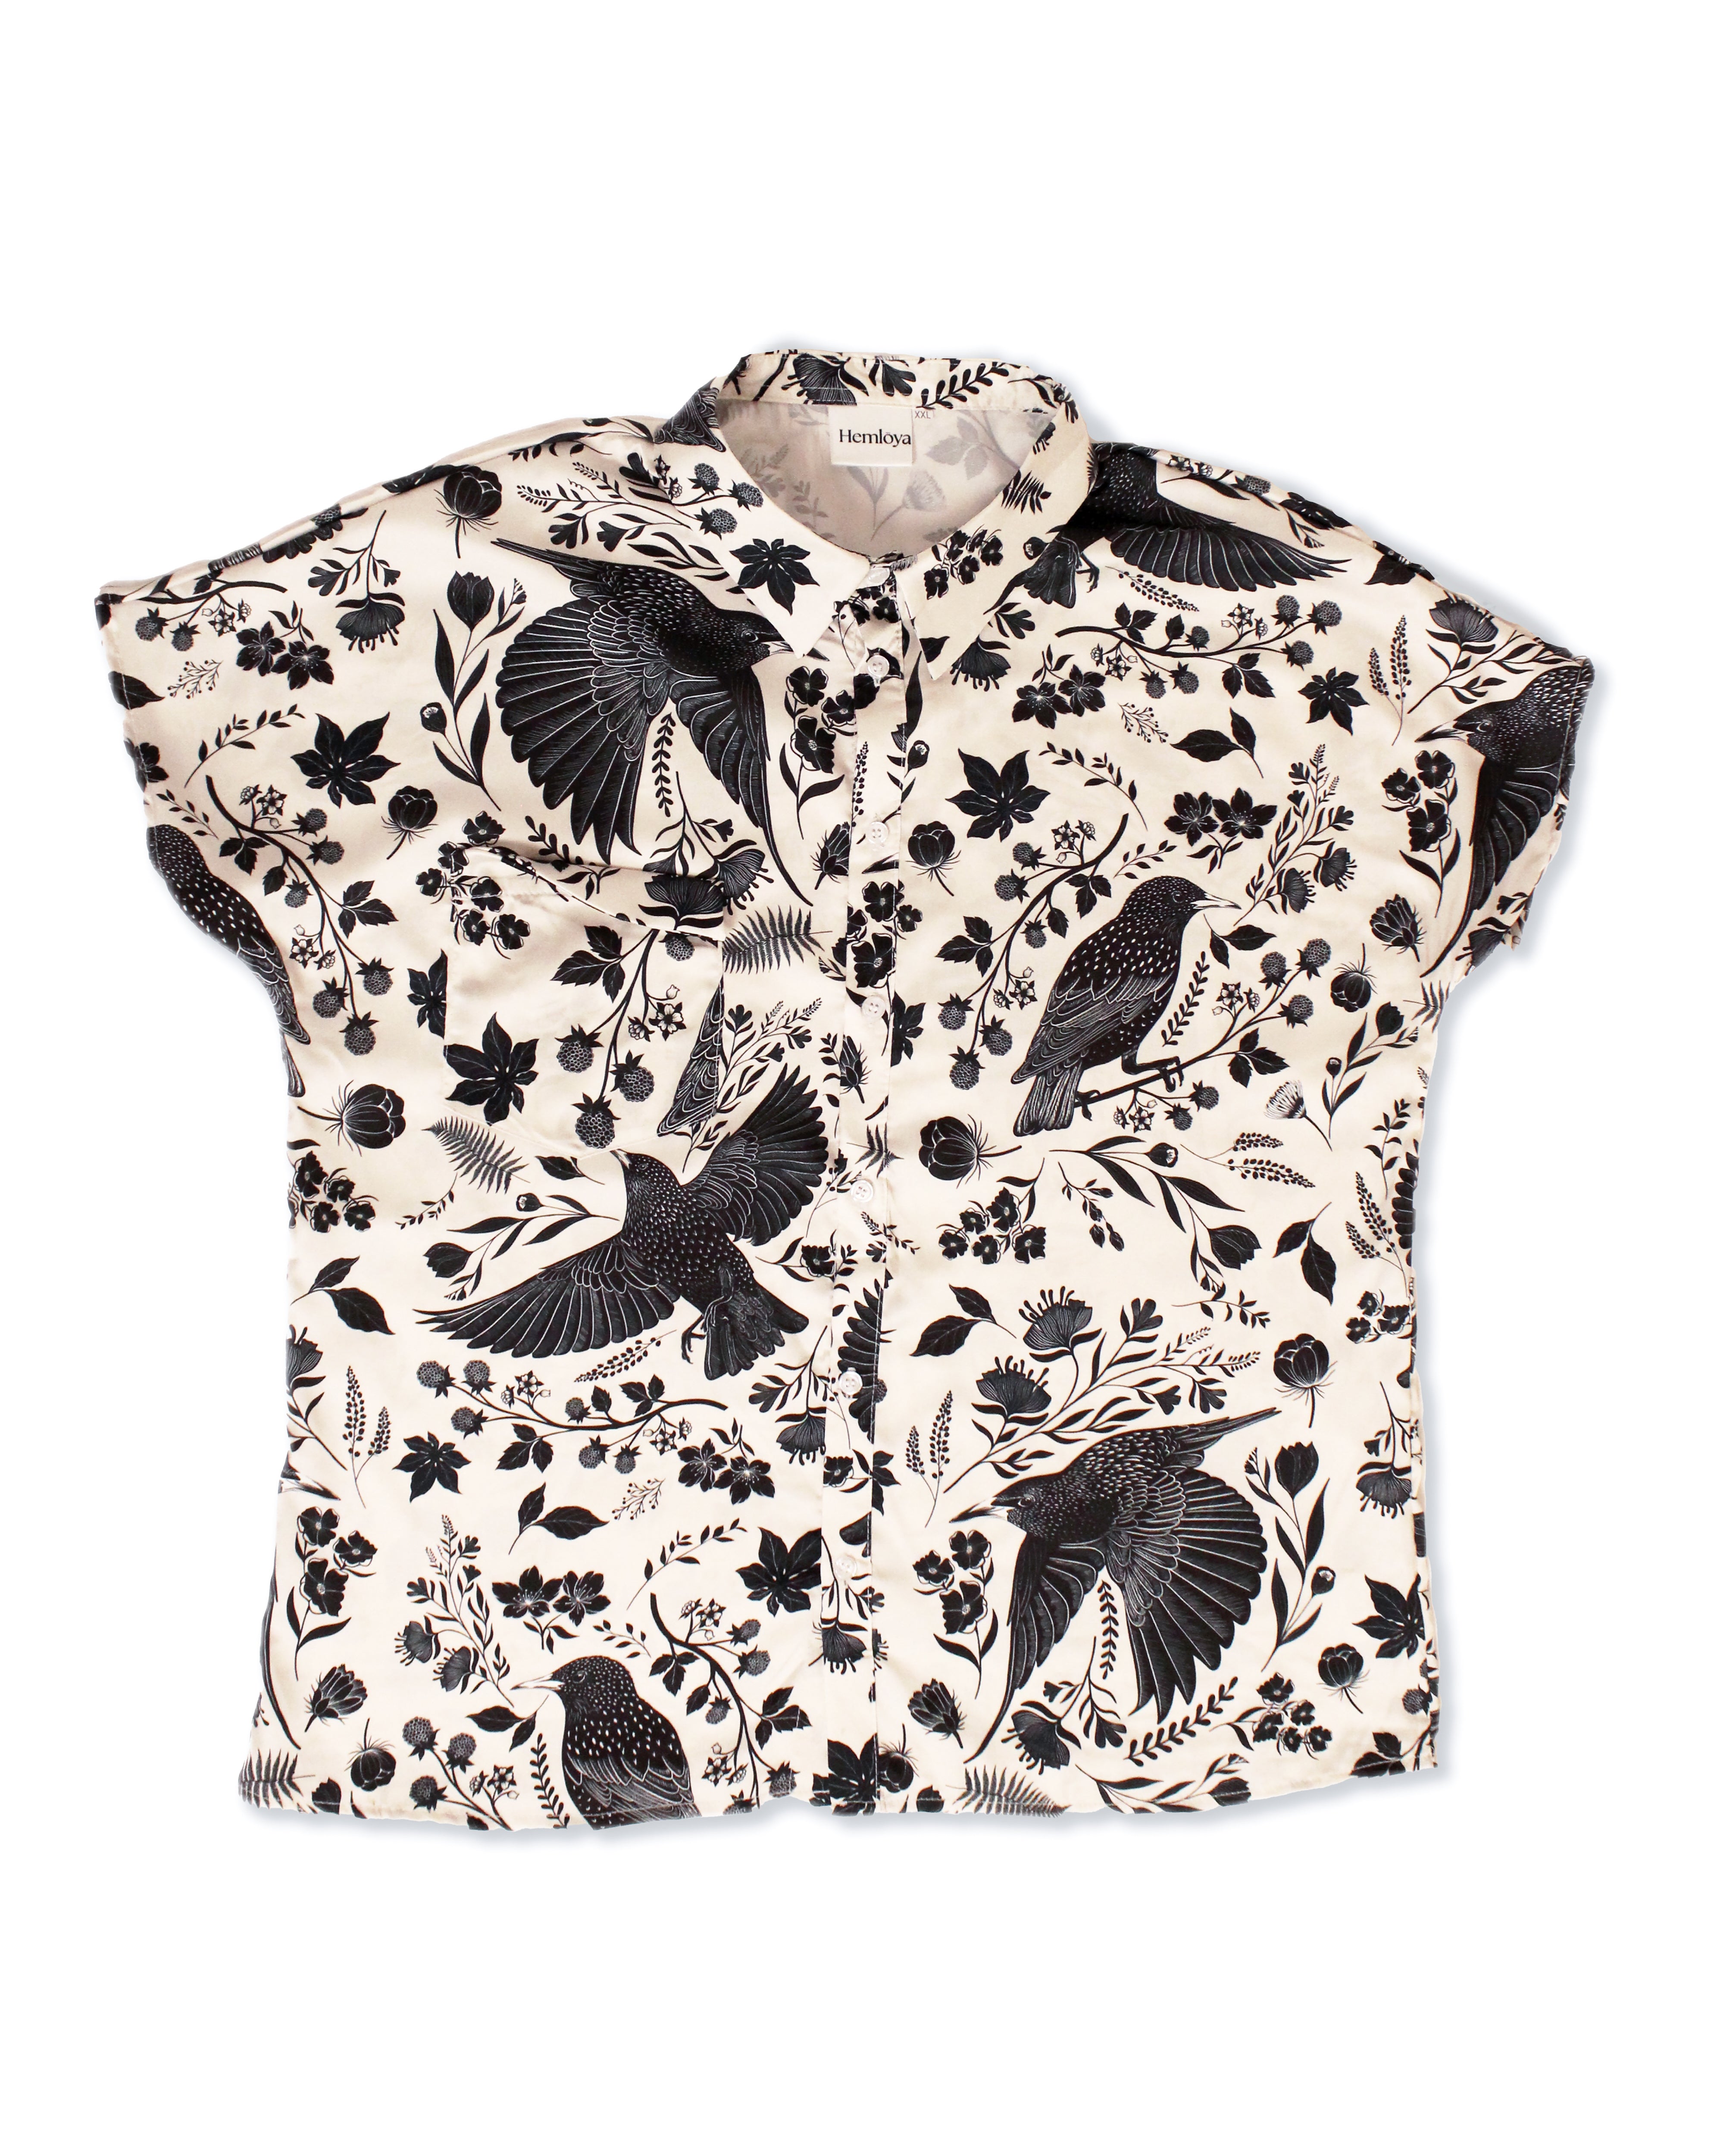 Starling Bird Button Up Shirt – Hemloya